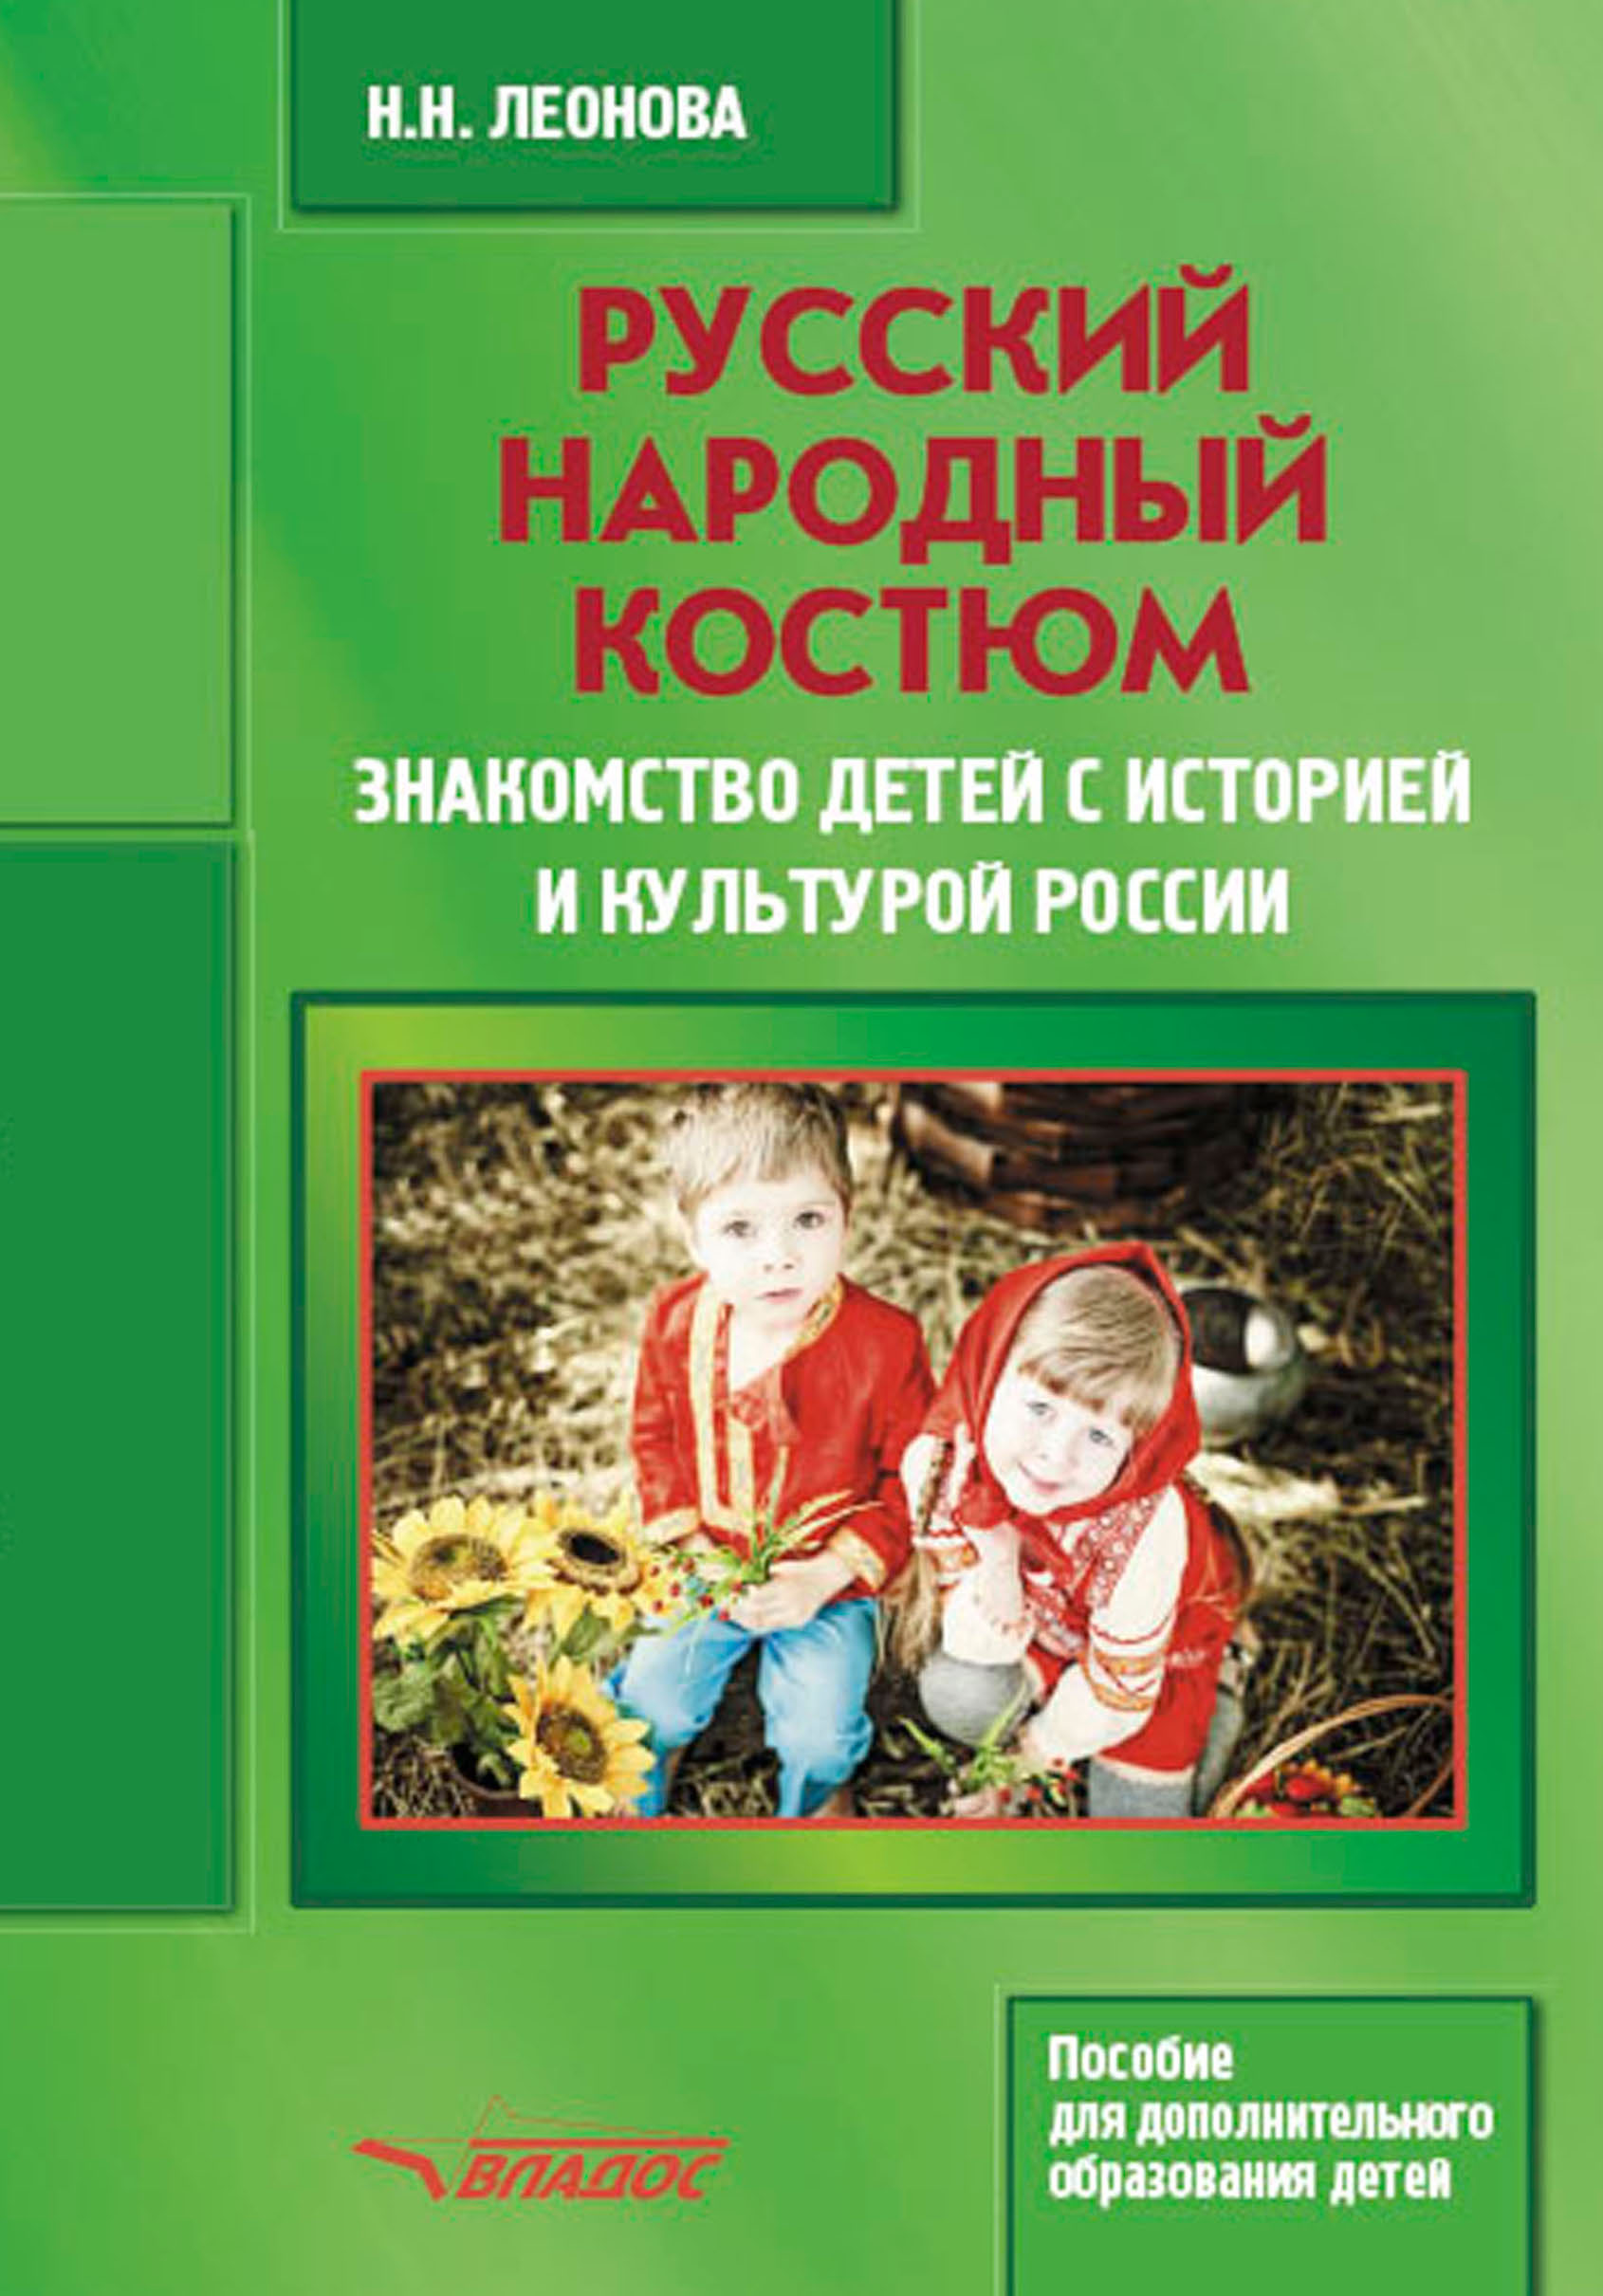 Купить народные костюмы для девочек в интернет магазине dostavkamuki.ru